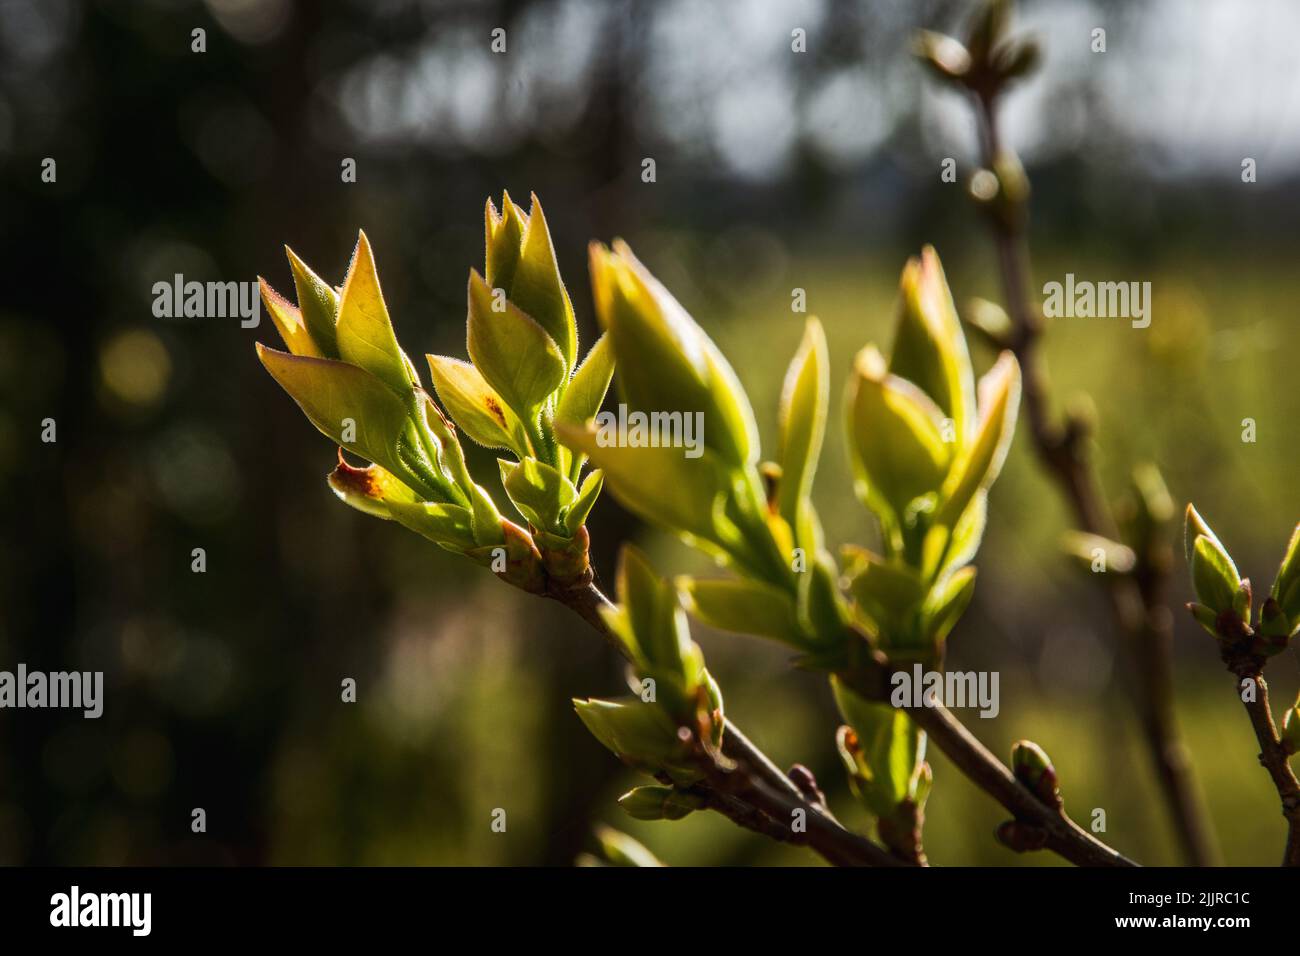 Die ersten Blätter eines Zierstrauch im Frühjahr unter Sonnenlicht. Fliederknospen wachsen im frühen Frühjahr. Stockfoto